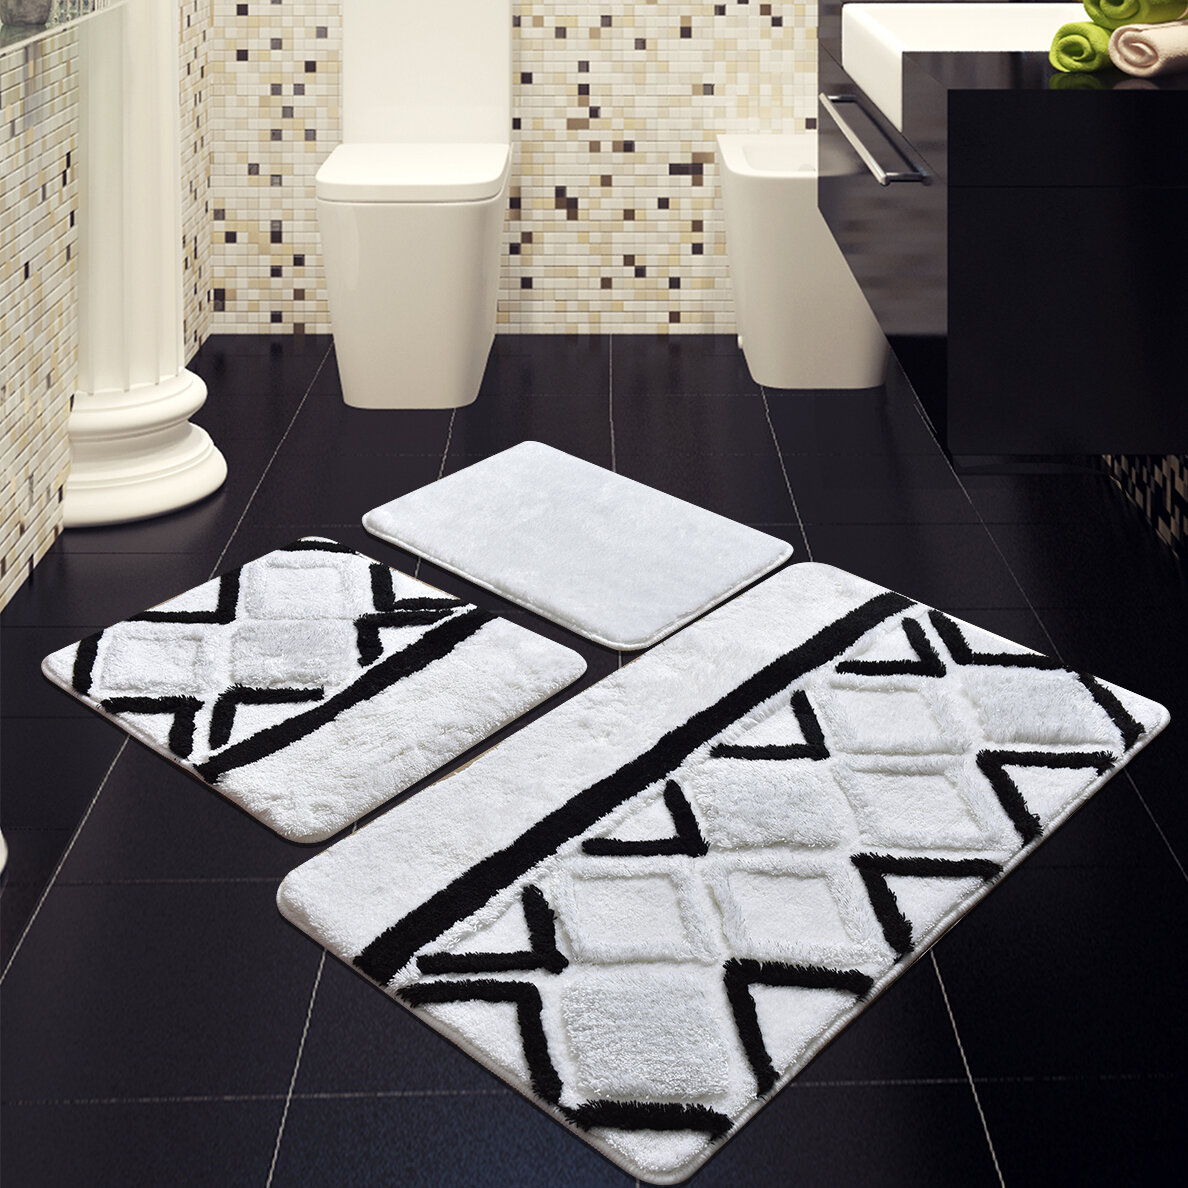 white bath mat set